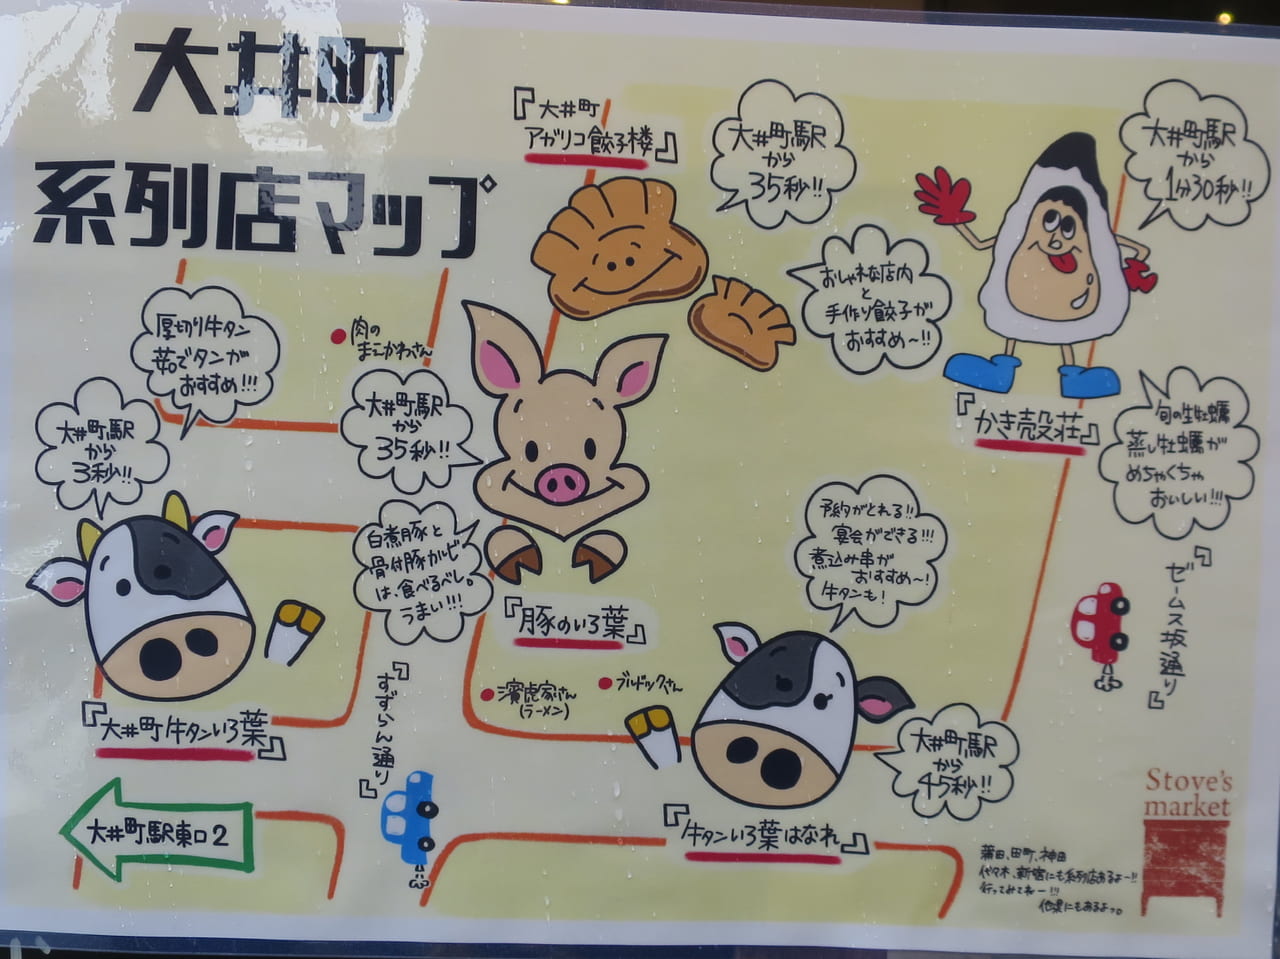 大井町牛タンいろ葉系列店マップ